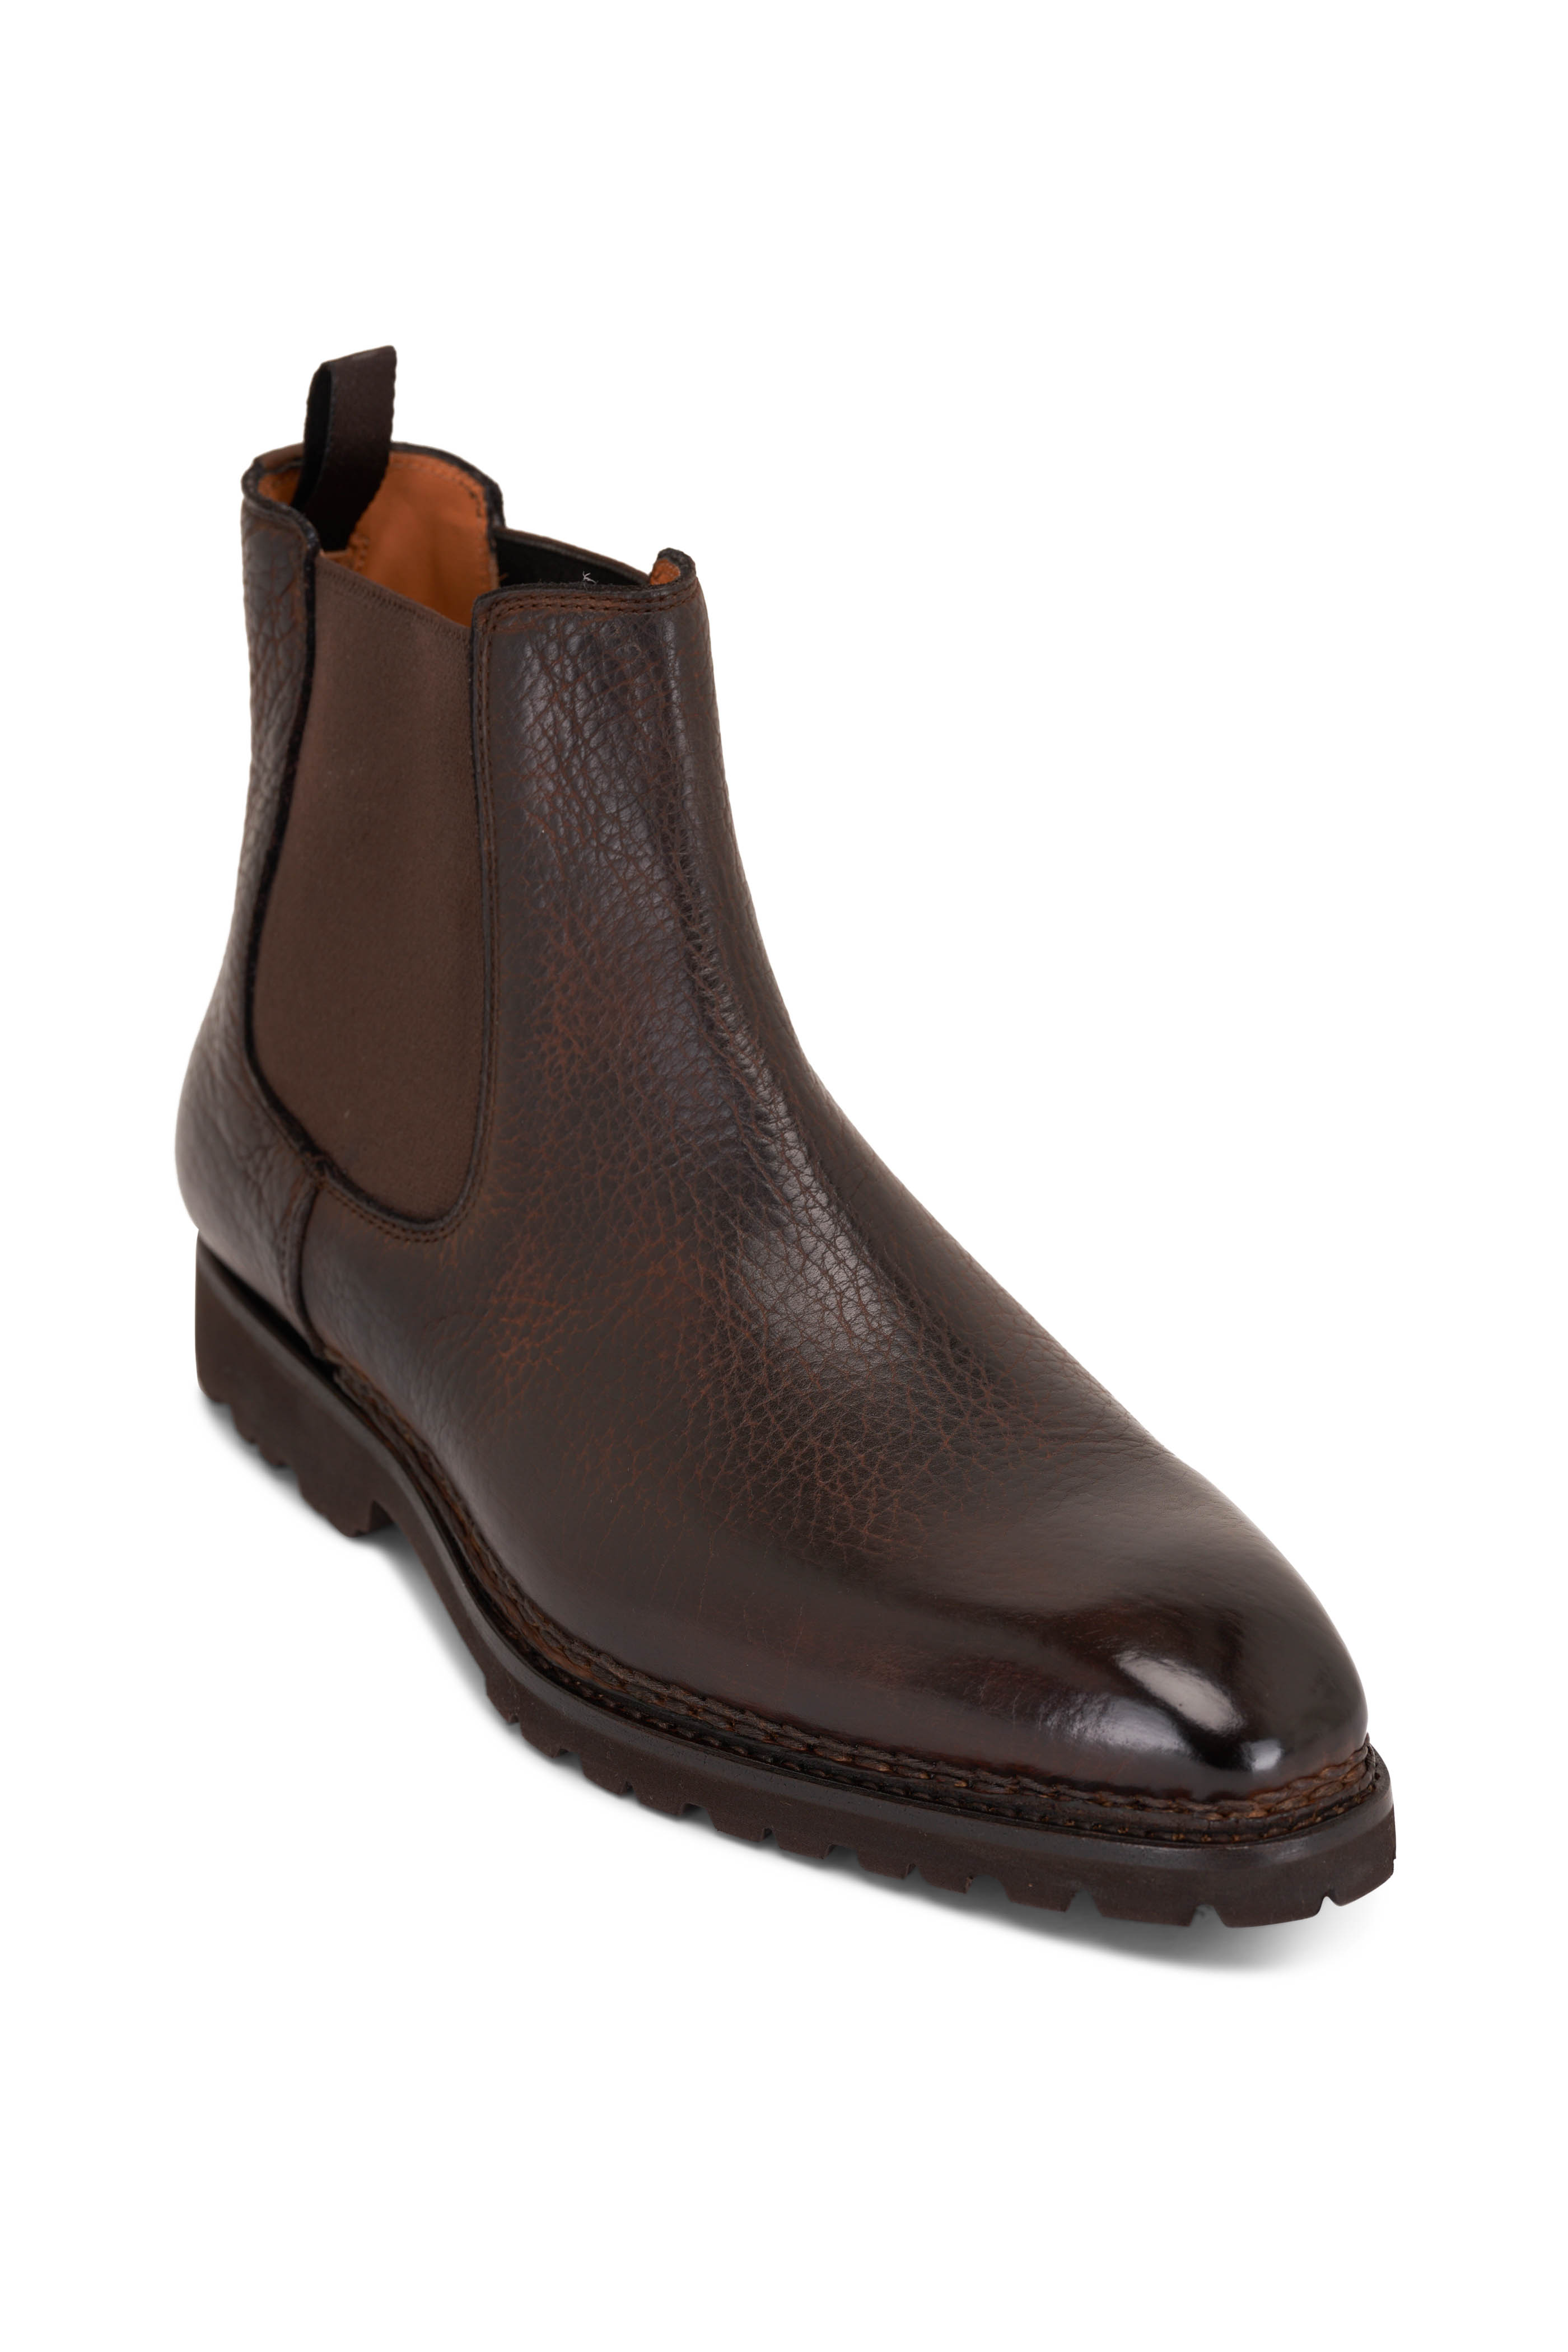 Berluti - Brunico Marrone Intenso Brown Boot Leather